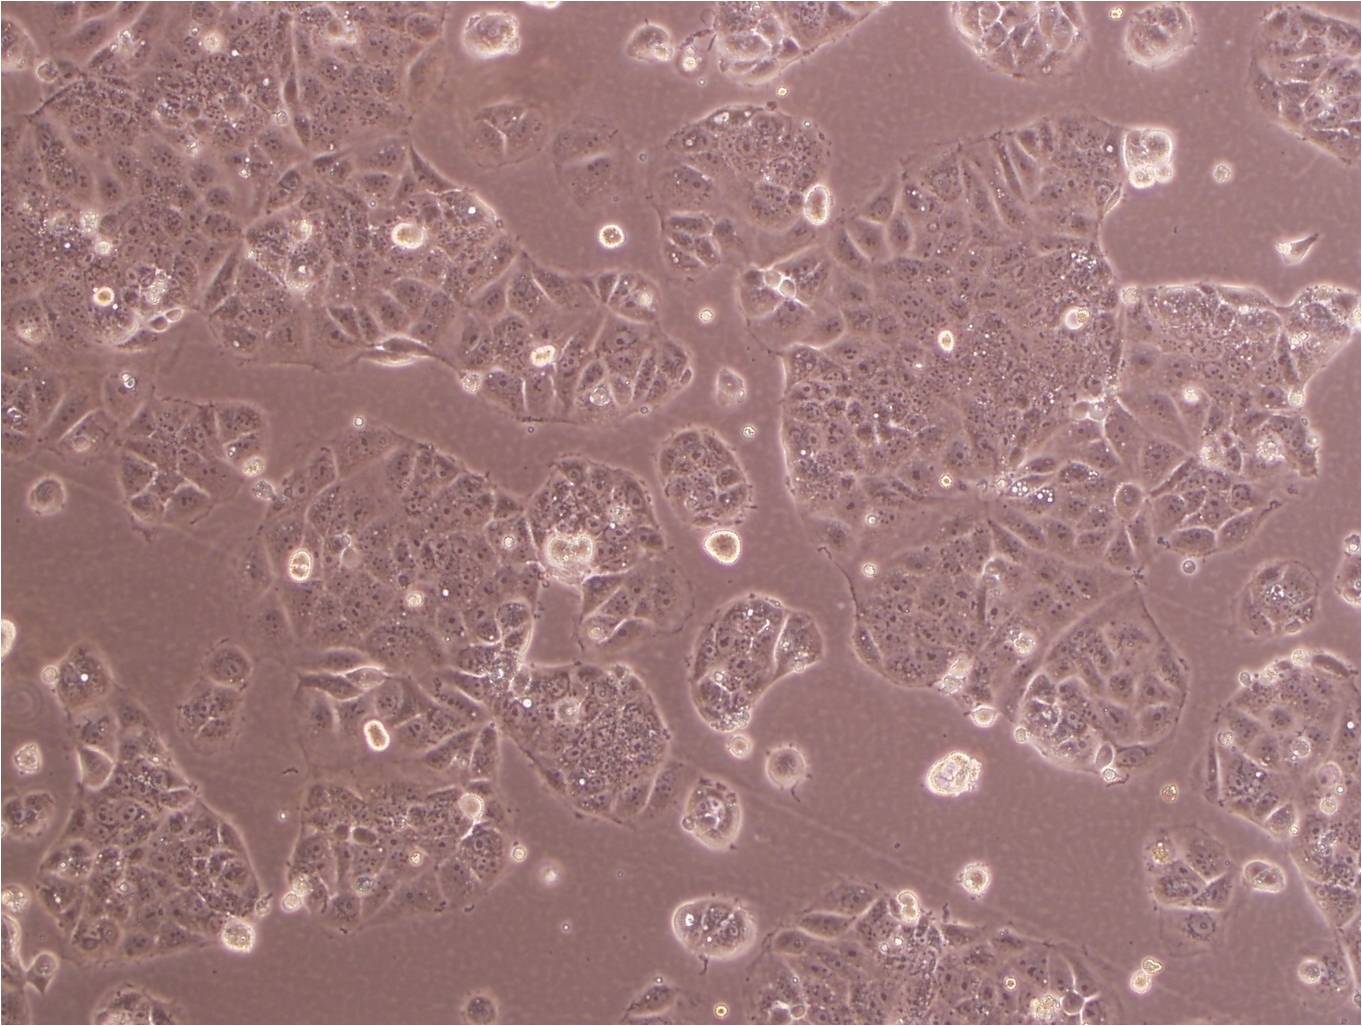 SK-N-BE(2) cell line人神经母细胞瘤细胞系